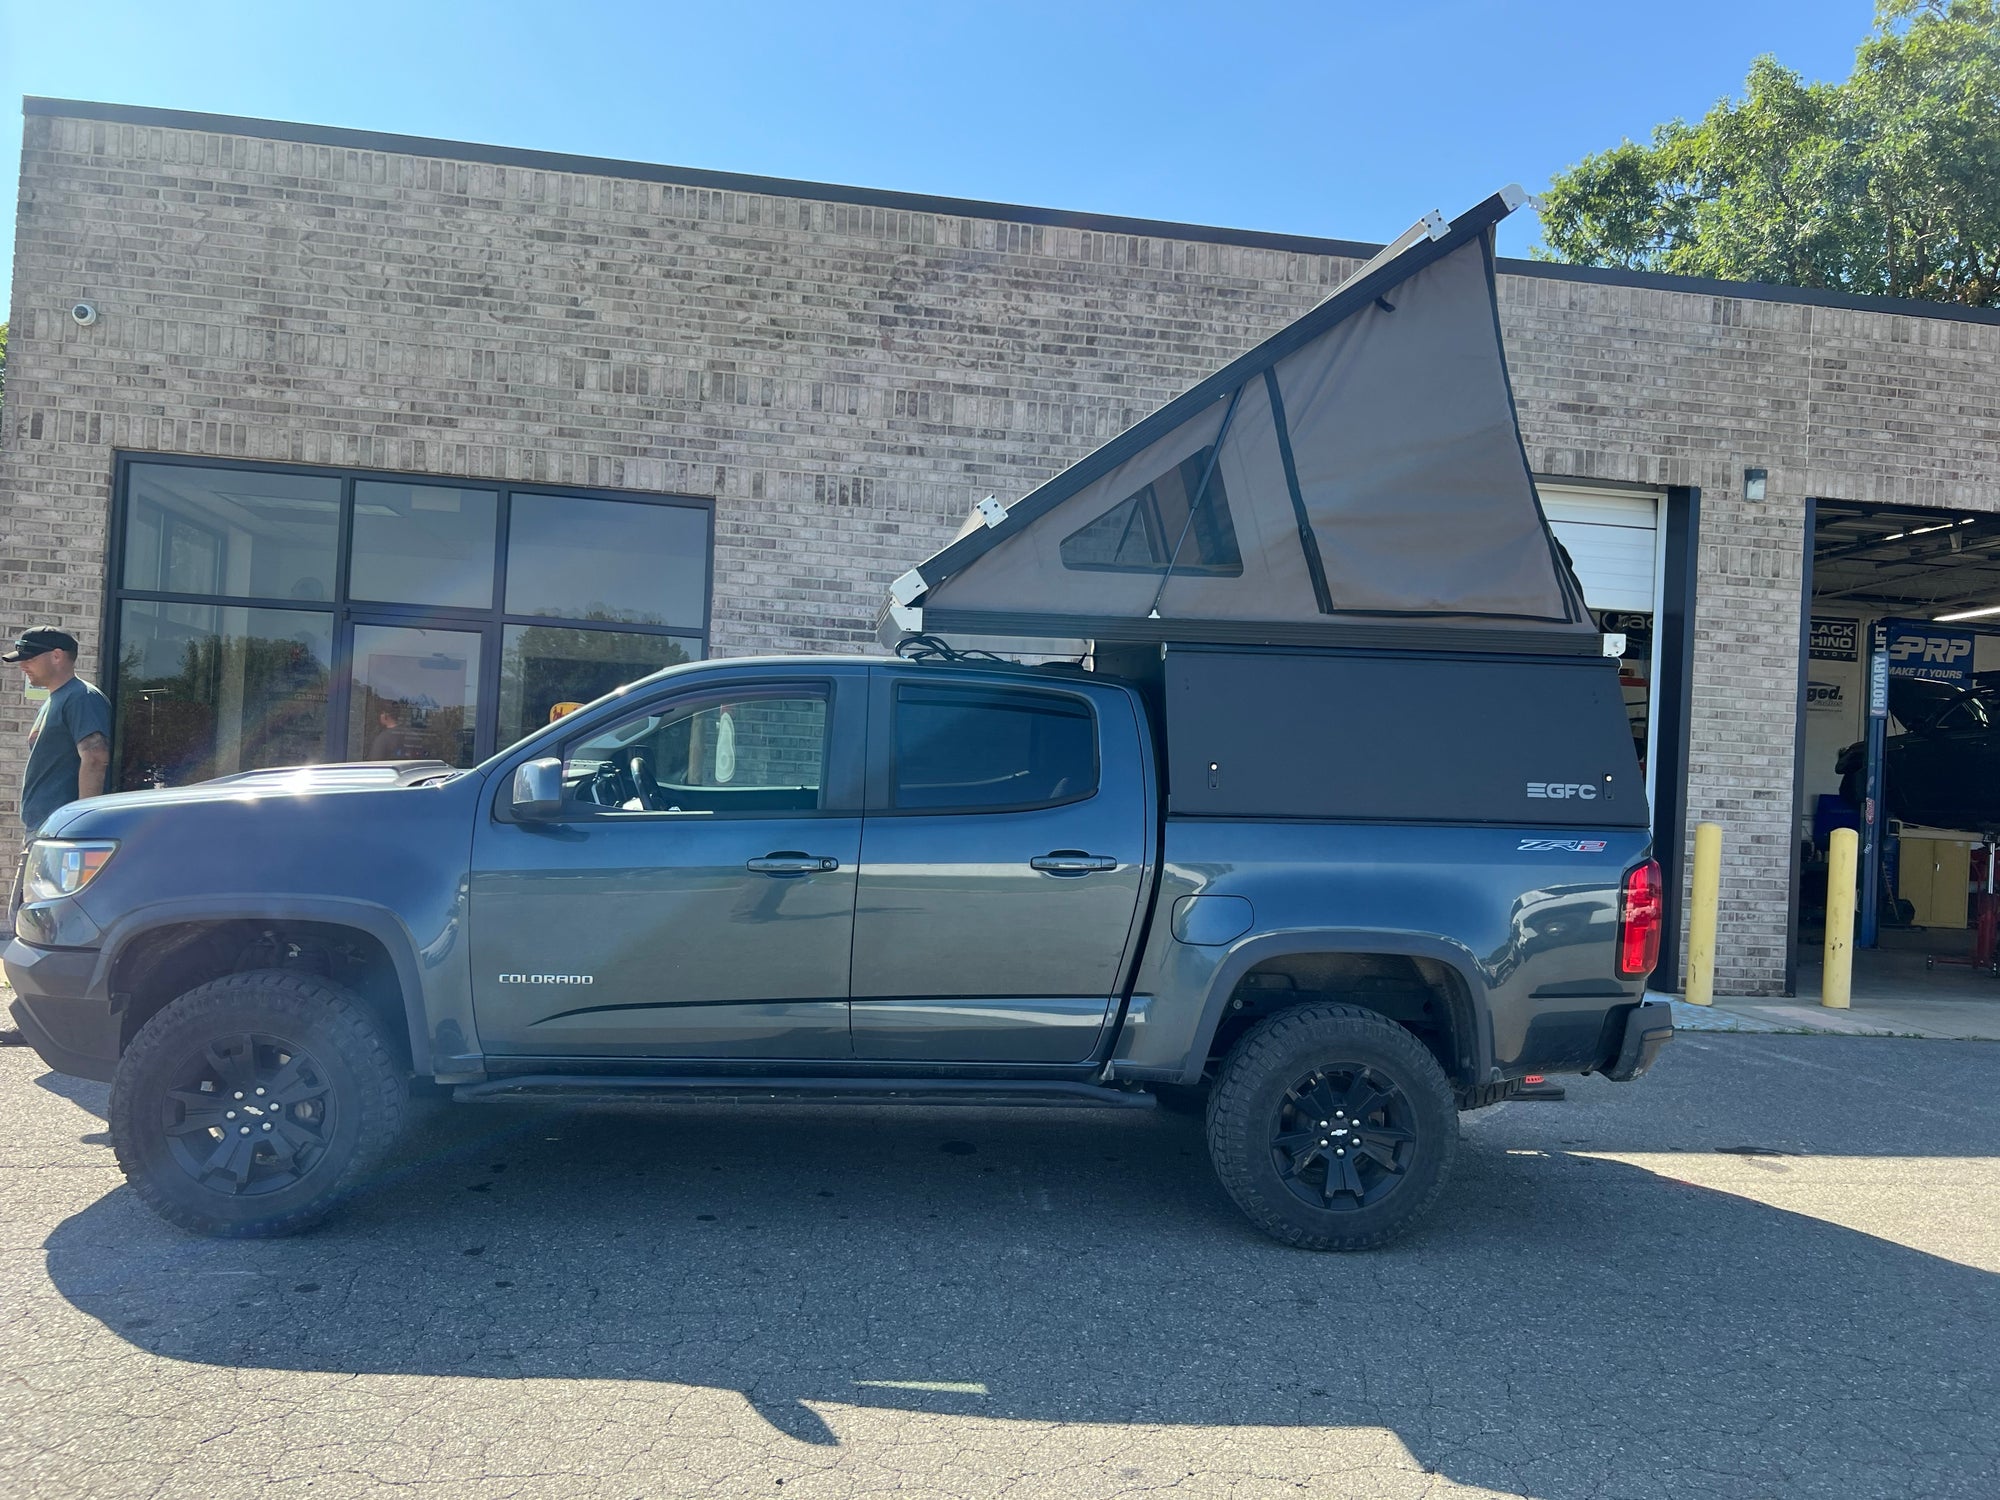 2019 Chevrolet Colorado Camper - Build #6141